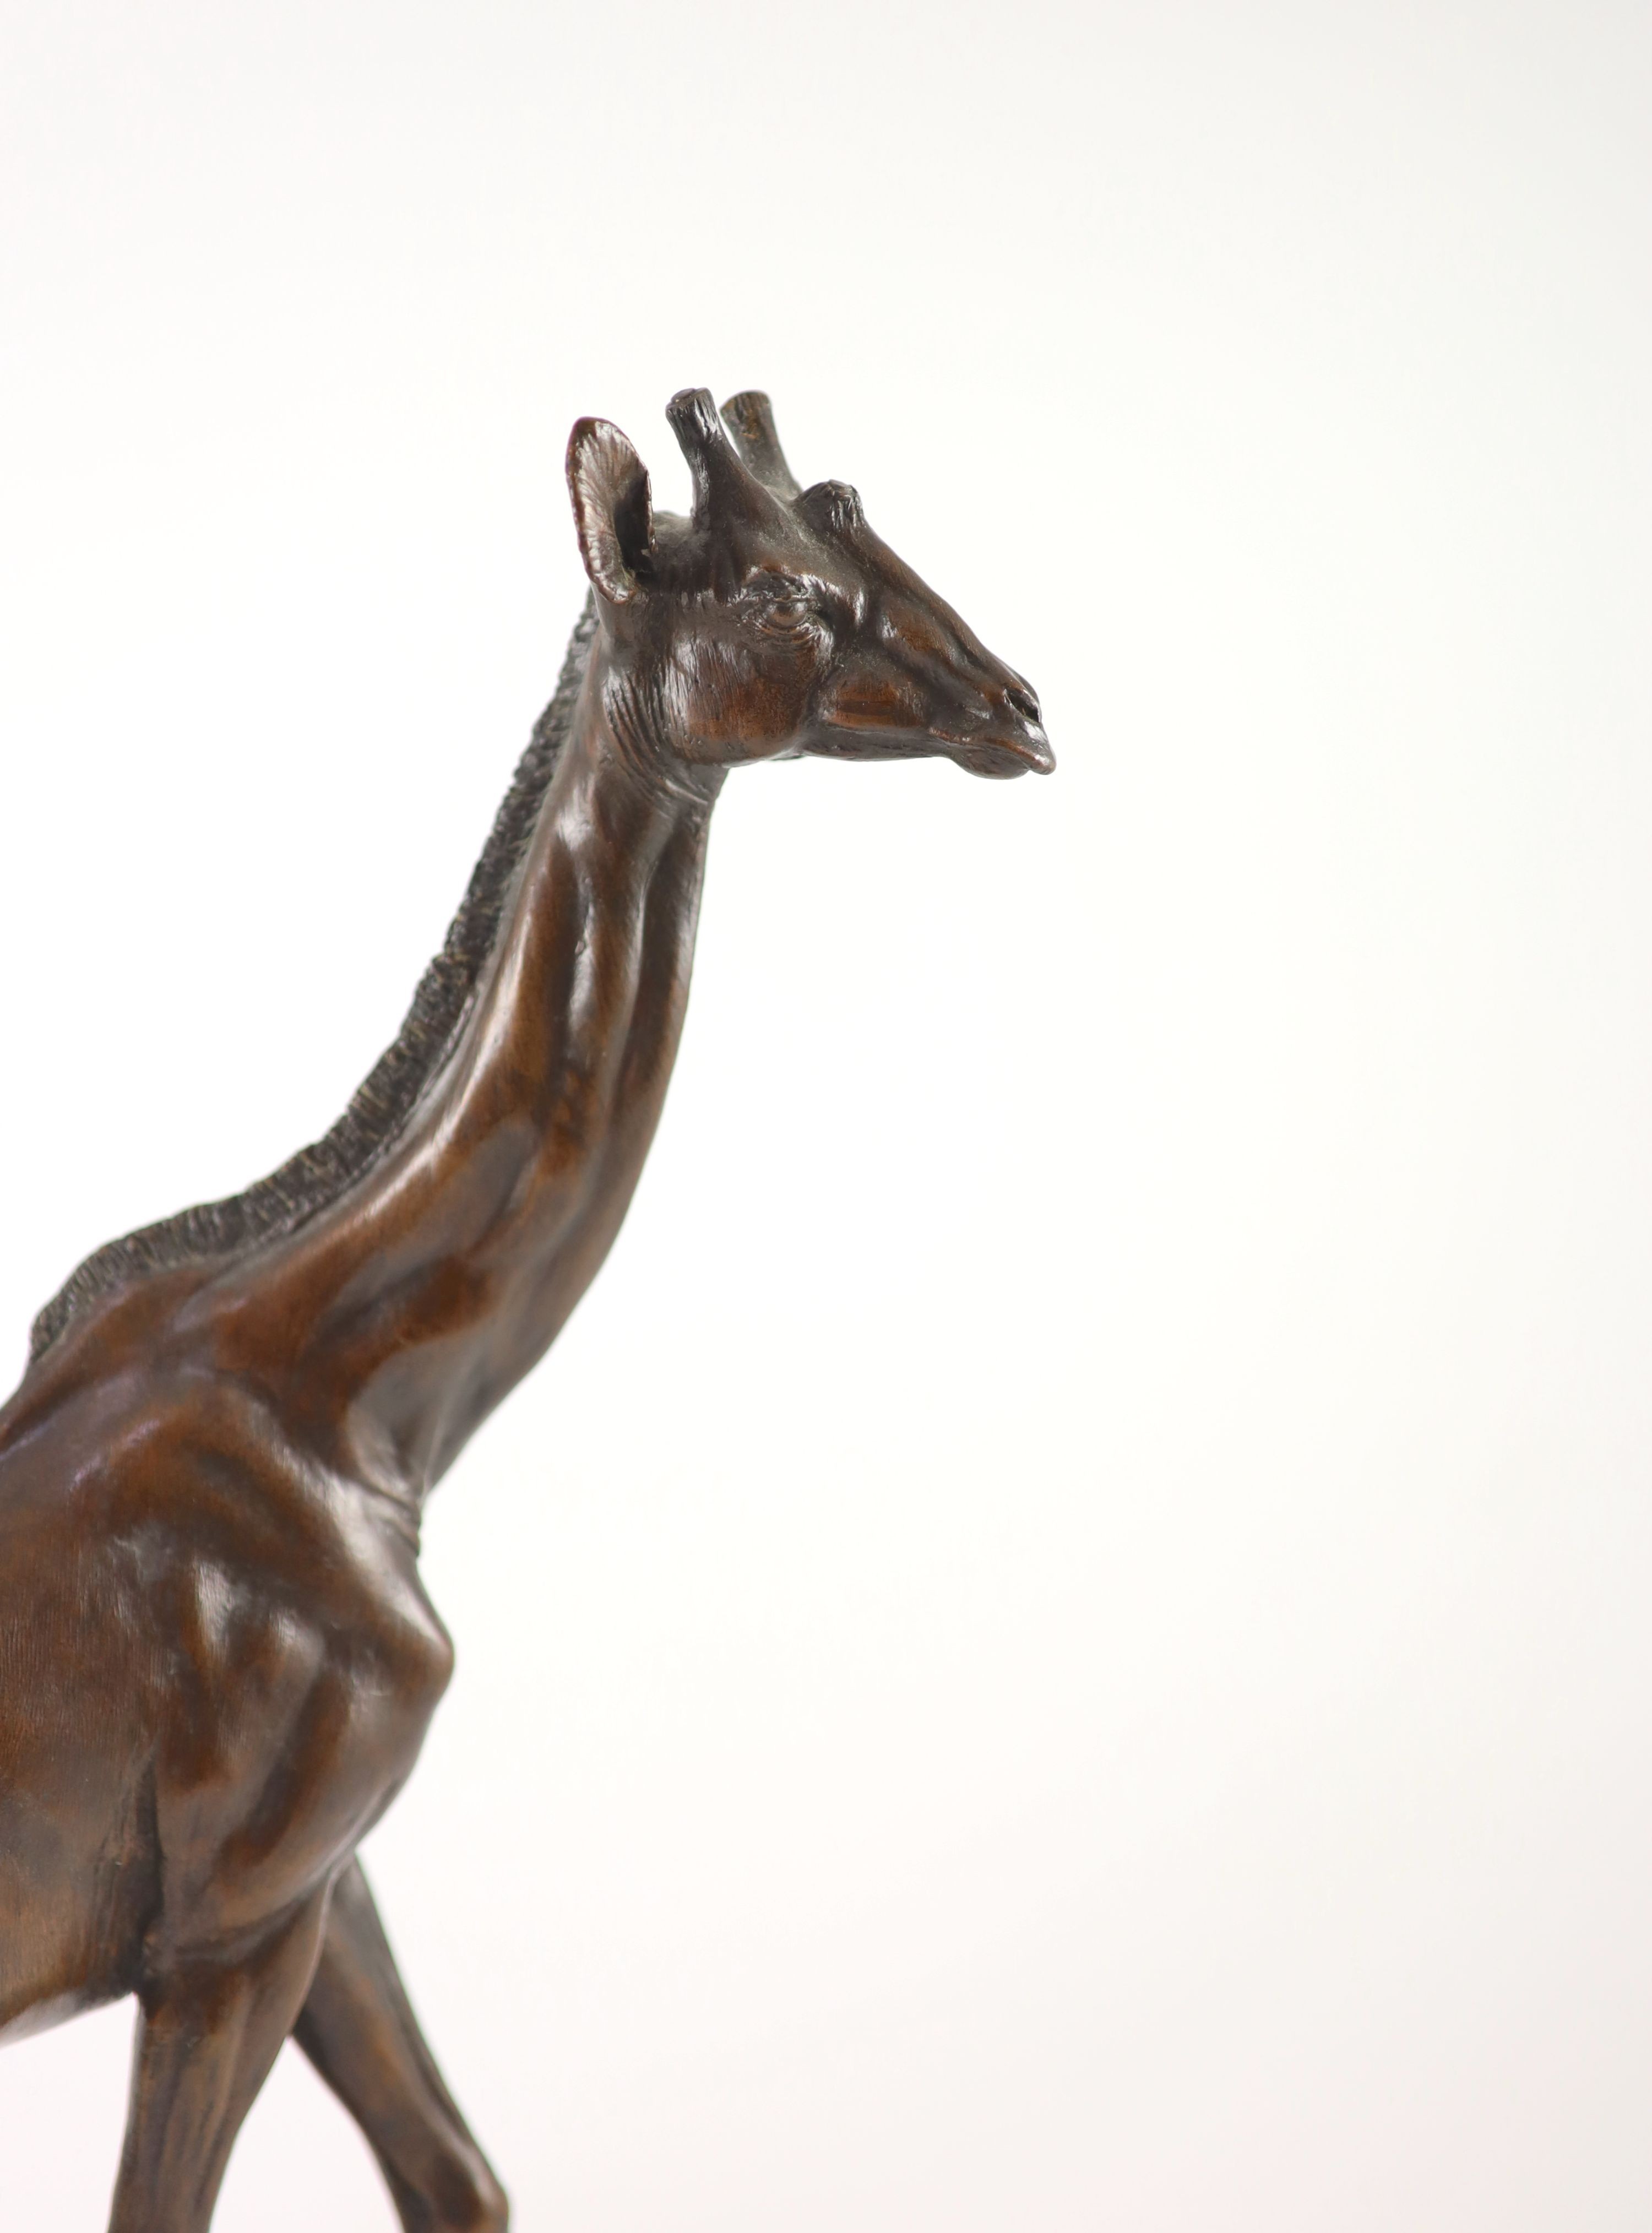 Tim Nicklin. A bronze model of a giraffe, width 30cm height 43cm